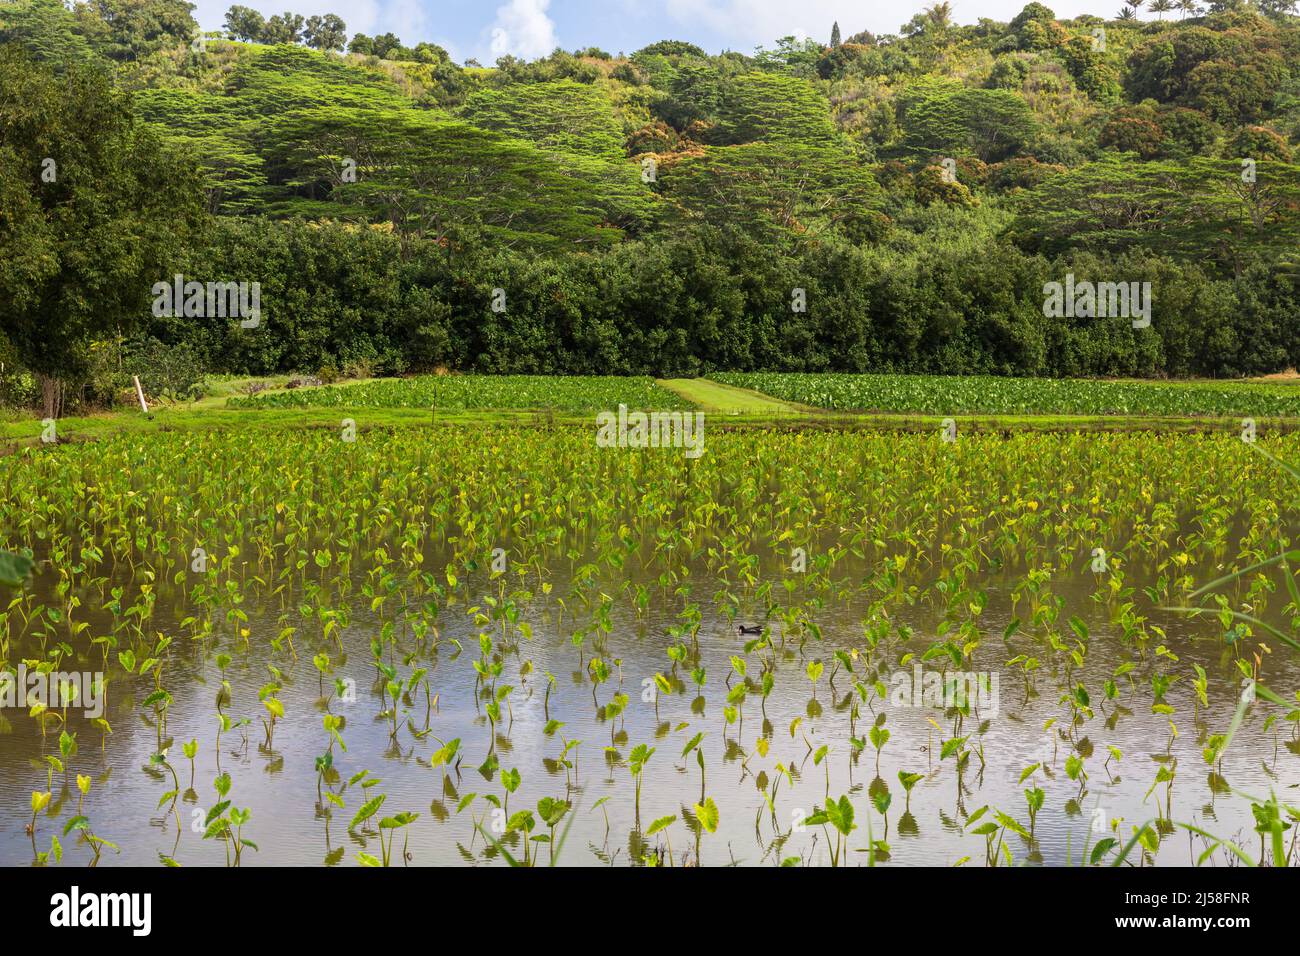 Un campo allagato di piante di Taro, Colocasia esculenta, che cresce sull'isola pacifica di Kauai, Hawaii. Una Gallinule hawaiana si trova al centro del fiel Foto Stock